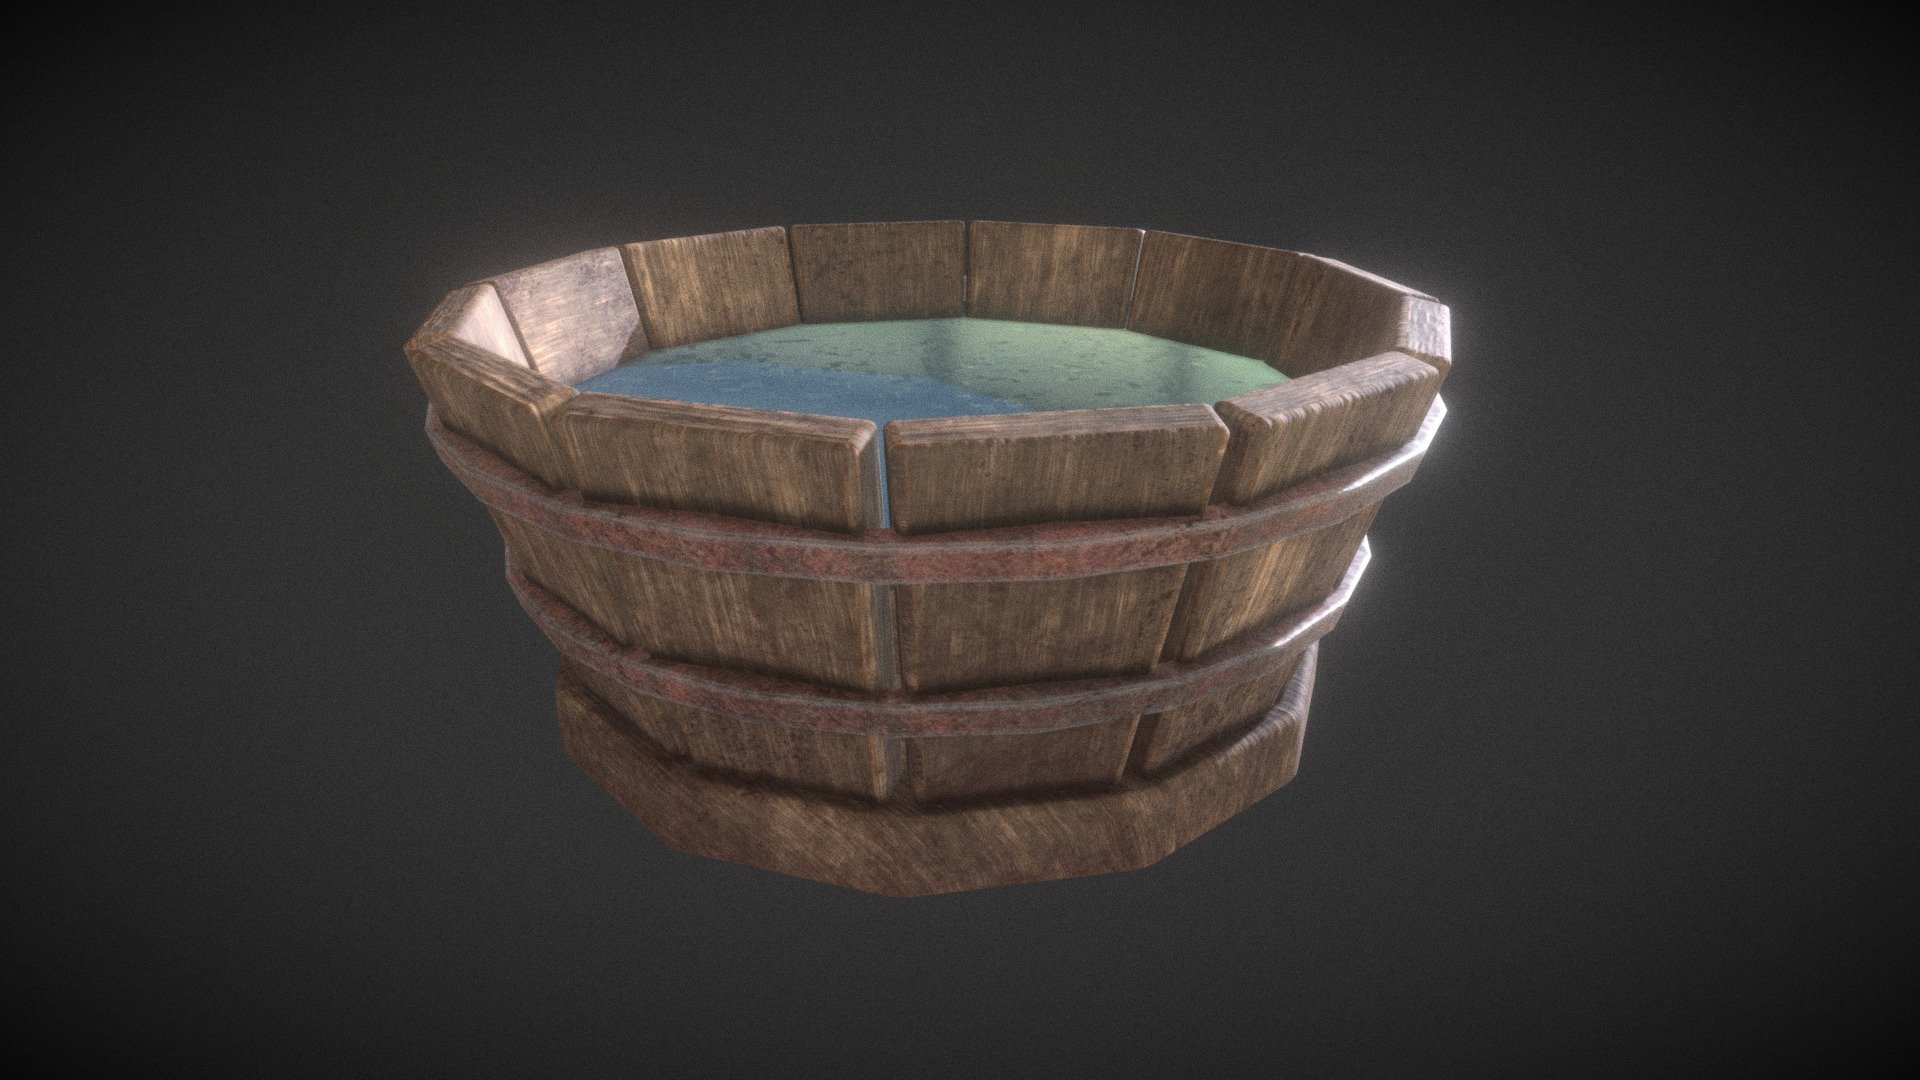 Free 3d model Barrel. Created in maya/ - Barrel - Download Free 3D model by Oleksandr Pelypenko (@ape.cgart) 3d model